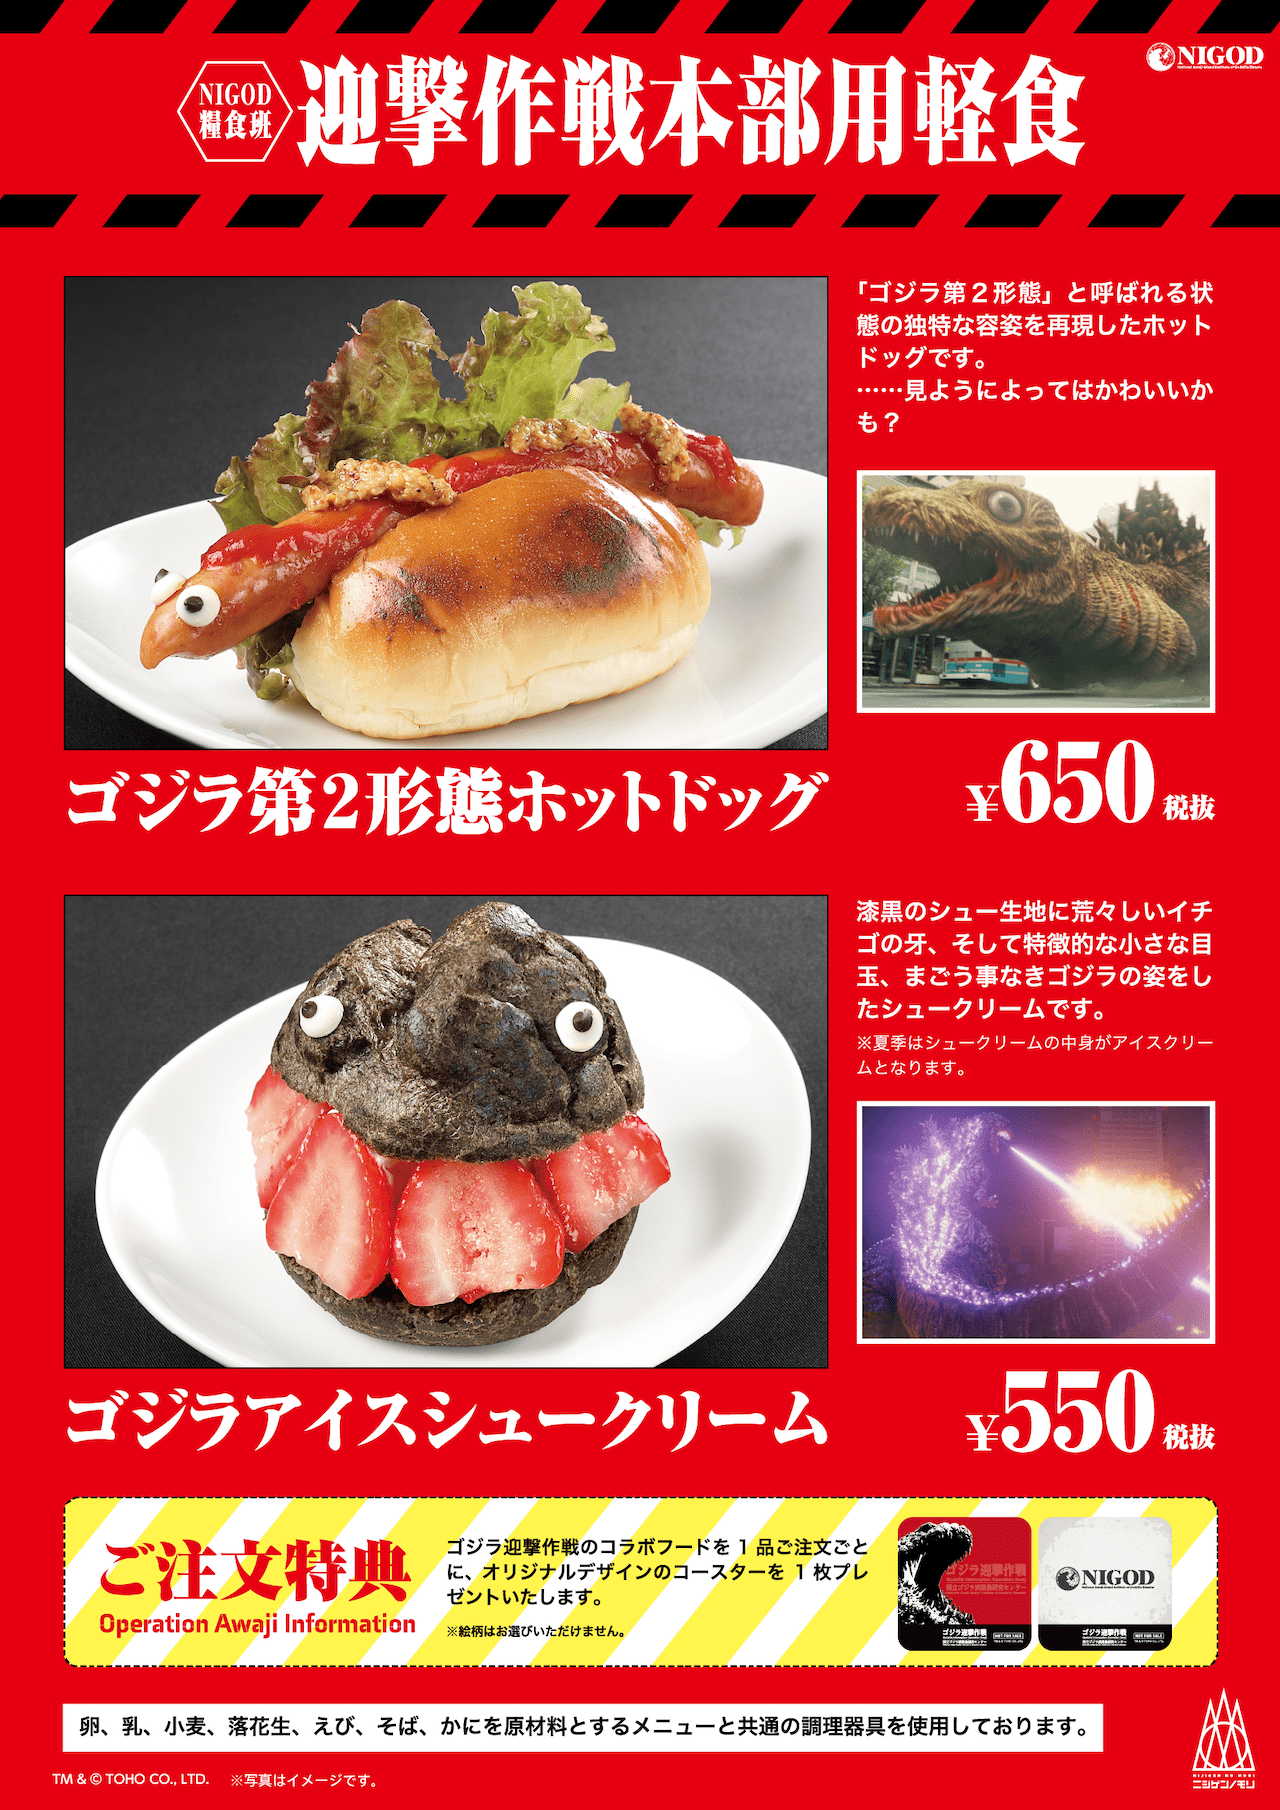 Godzilla Museum 4 - Godzilla-themed food